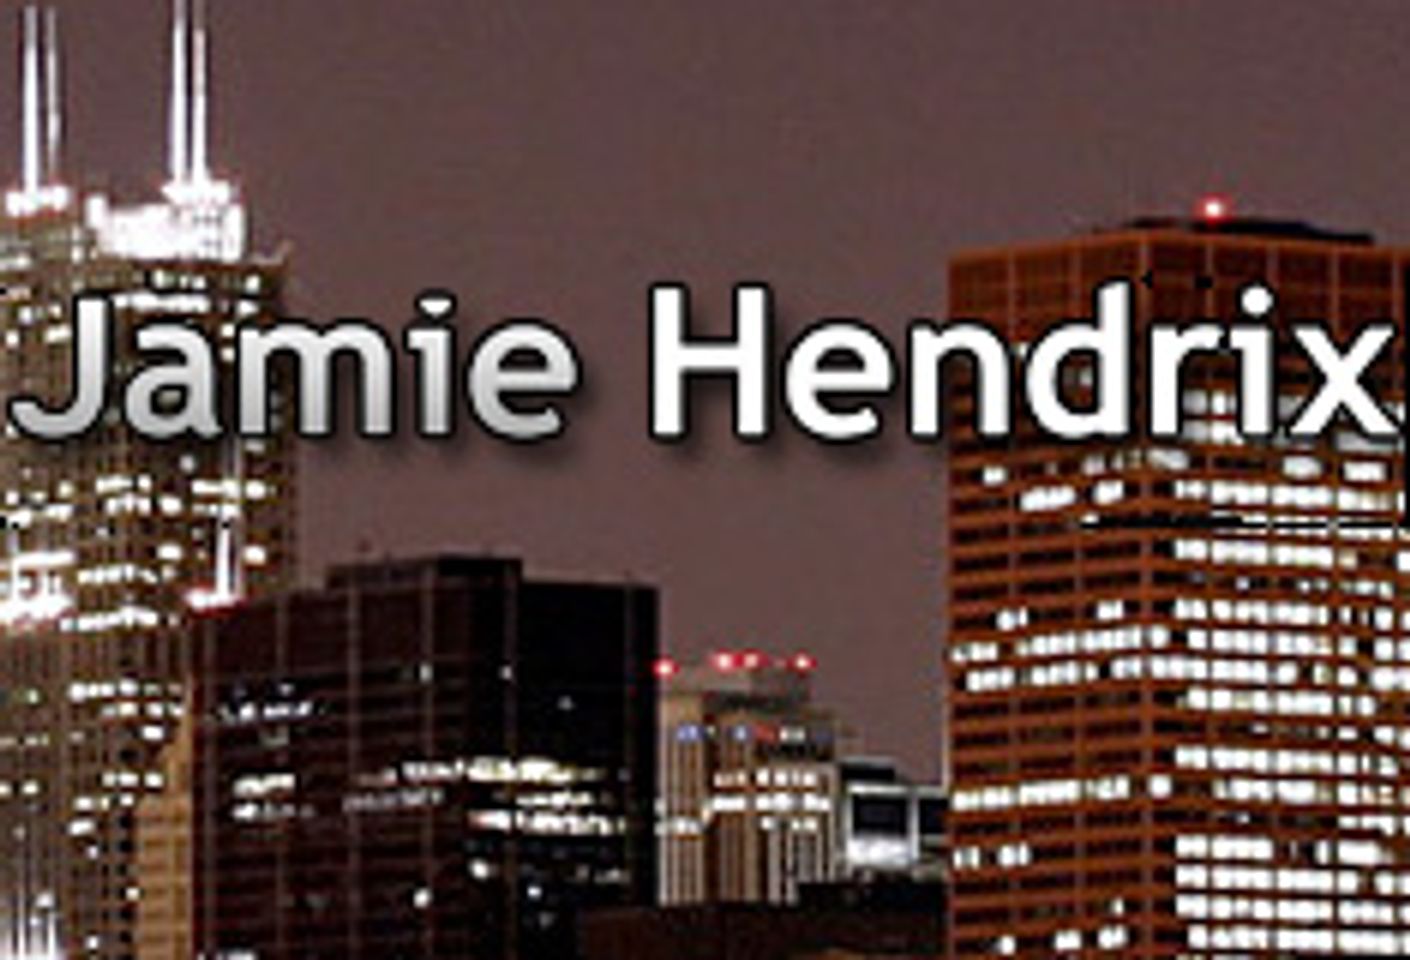 Jamie Hendrix Launches Blog